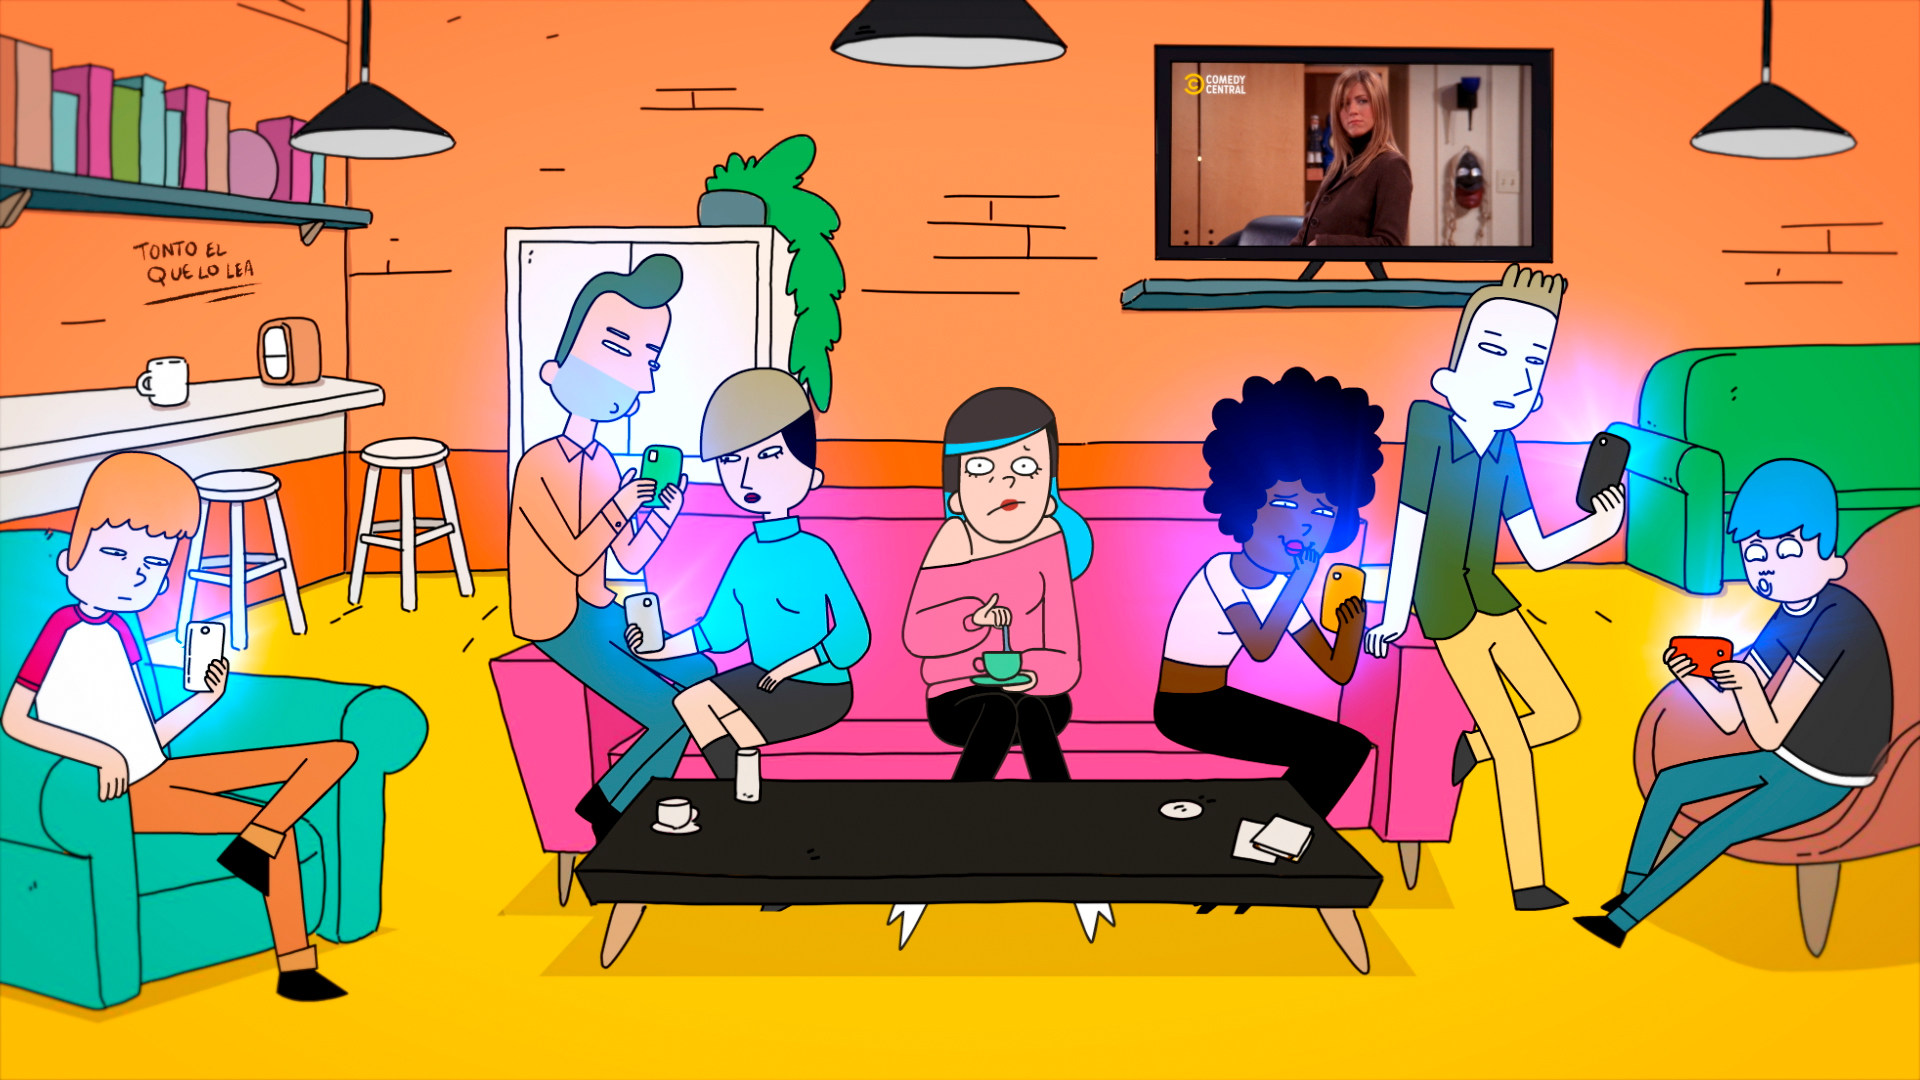 Pieza promocional de Comedy Central hecha en 2D con diseño de personajes y de acciones